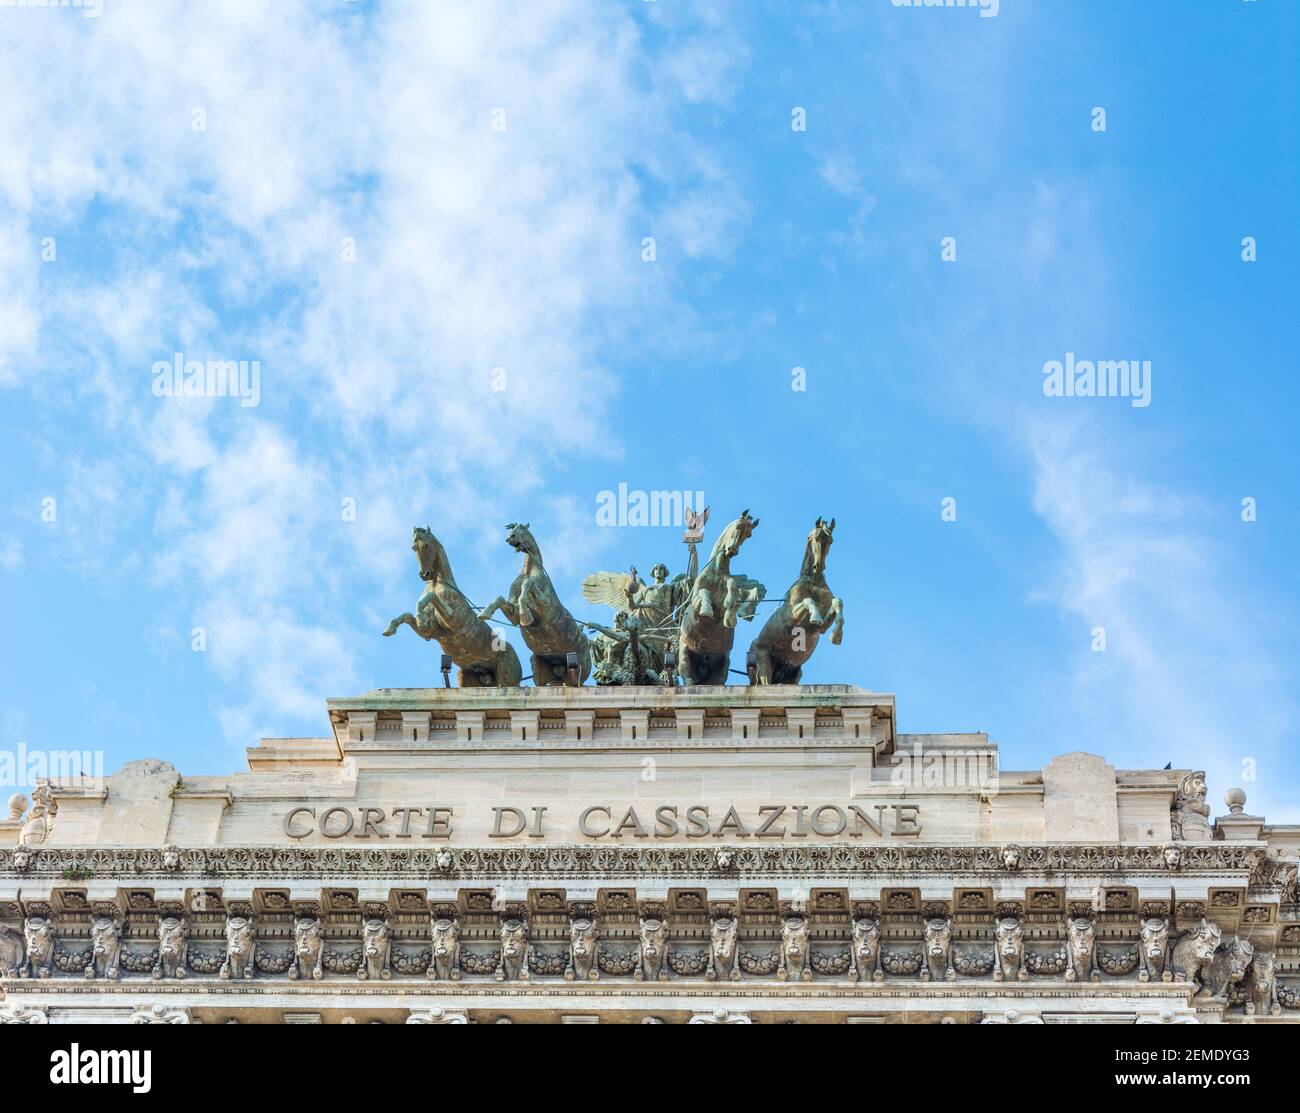 Rome, Italy - Oct 04, 2018: Quadriga crowns the facade of Corte di Cassazione - Cassation Court in Rome Stock Photo